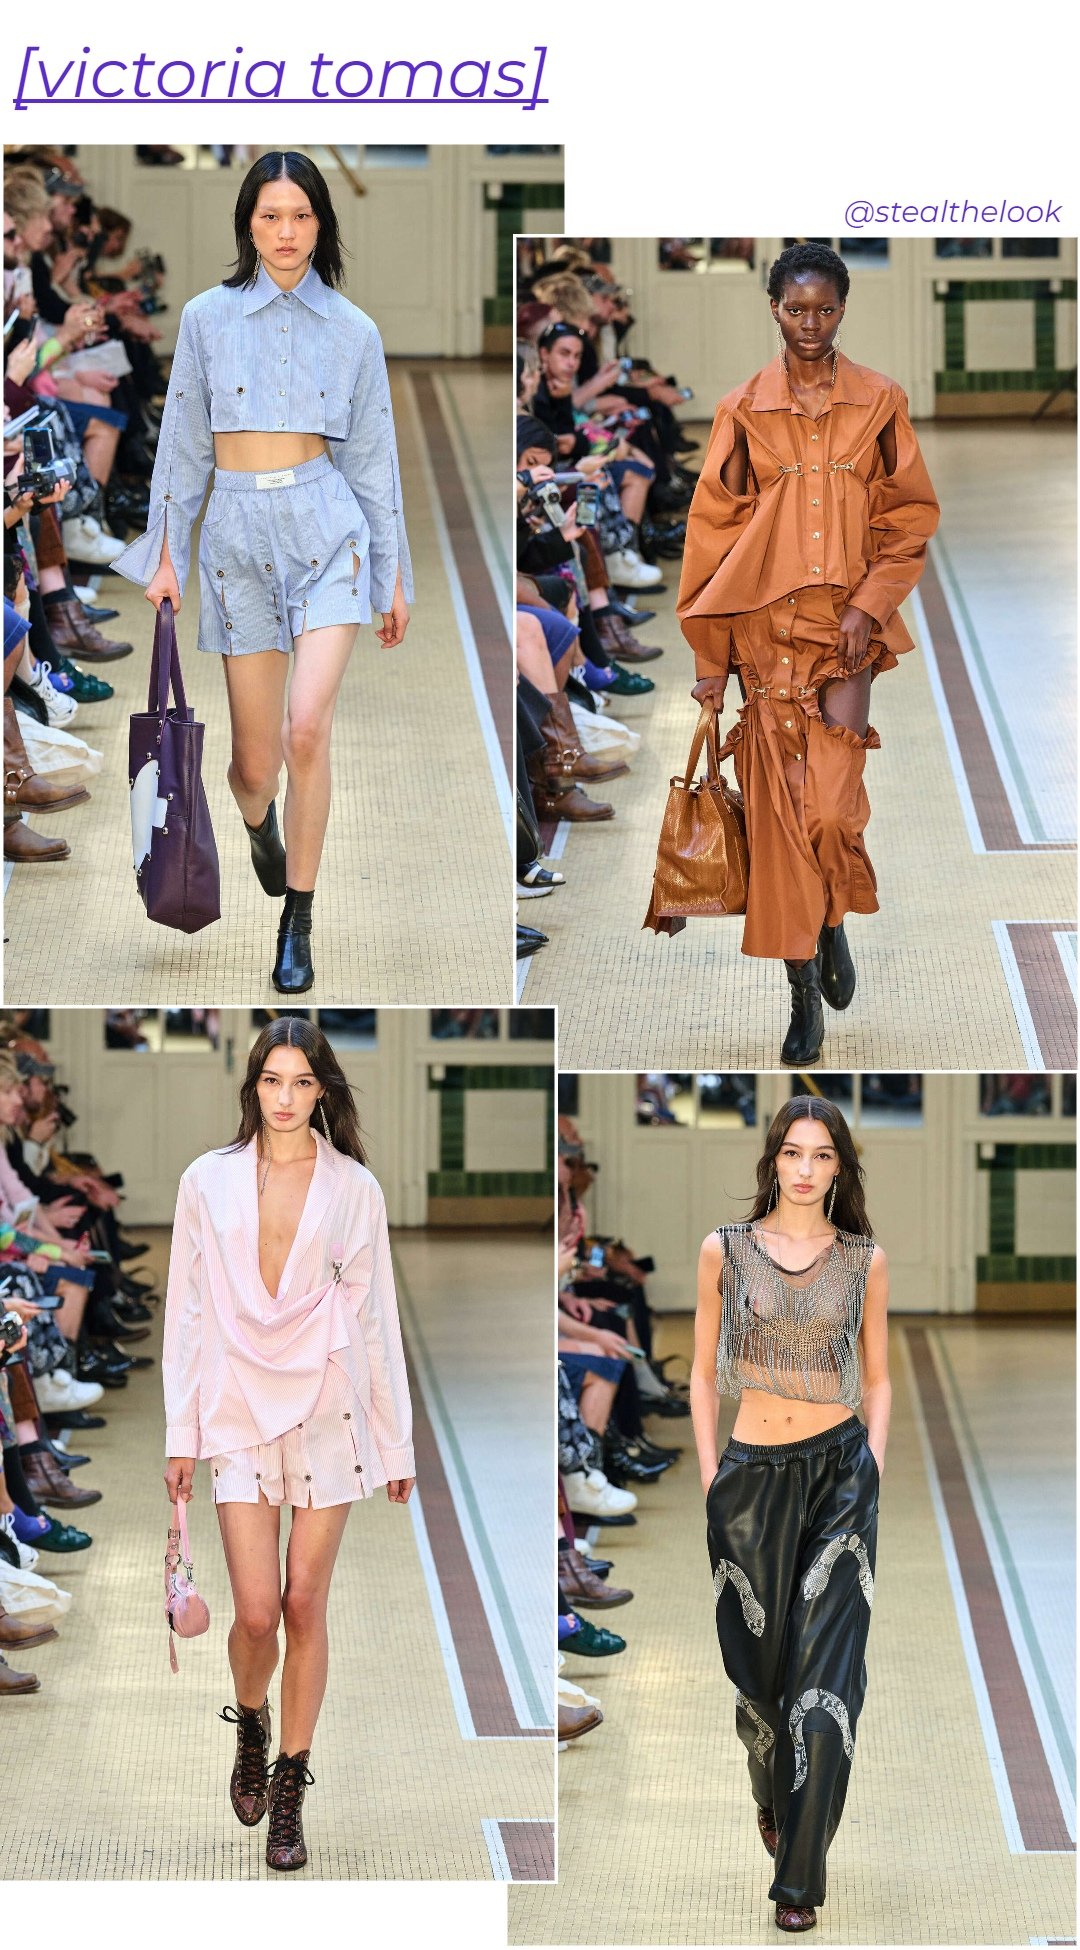 Victoria Tomas - roupas diversas - Paris Fashion Week - verão - colagem de imagens - https://stealthelook.com.br